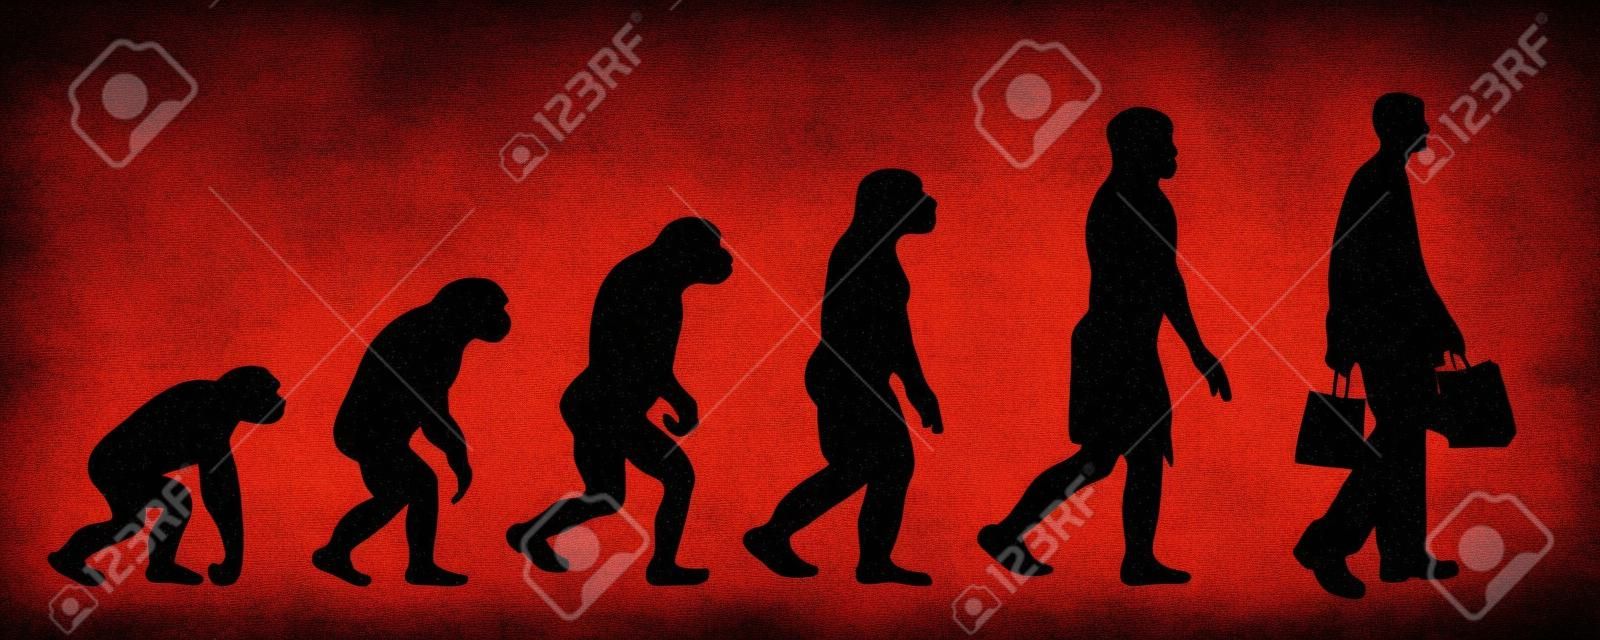 Geschilderde theorie van de evolutie van de vrouw. Vector silhouet van homo sapiens. Symbool van aap tot winkelen.